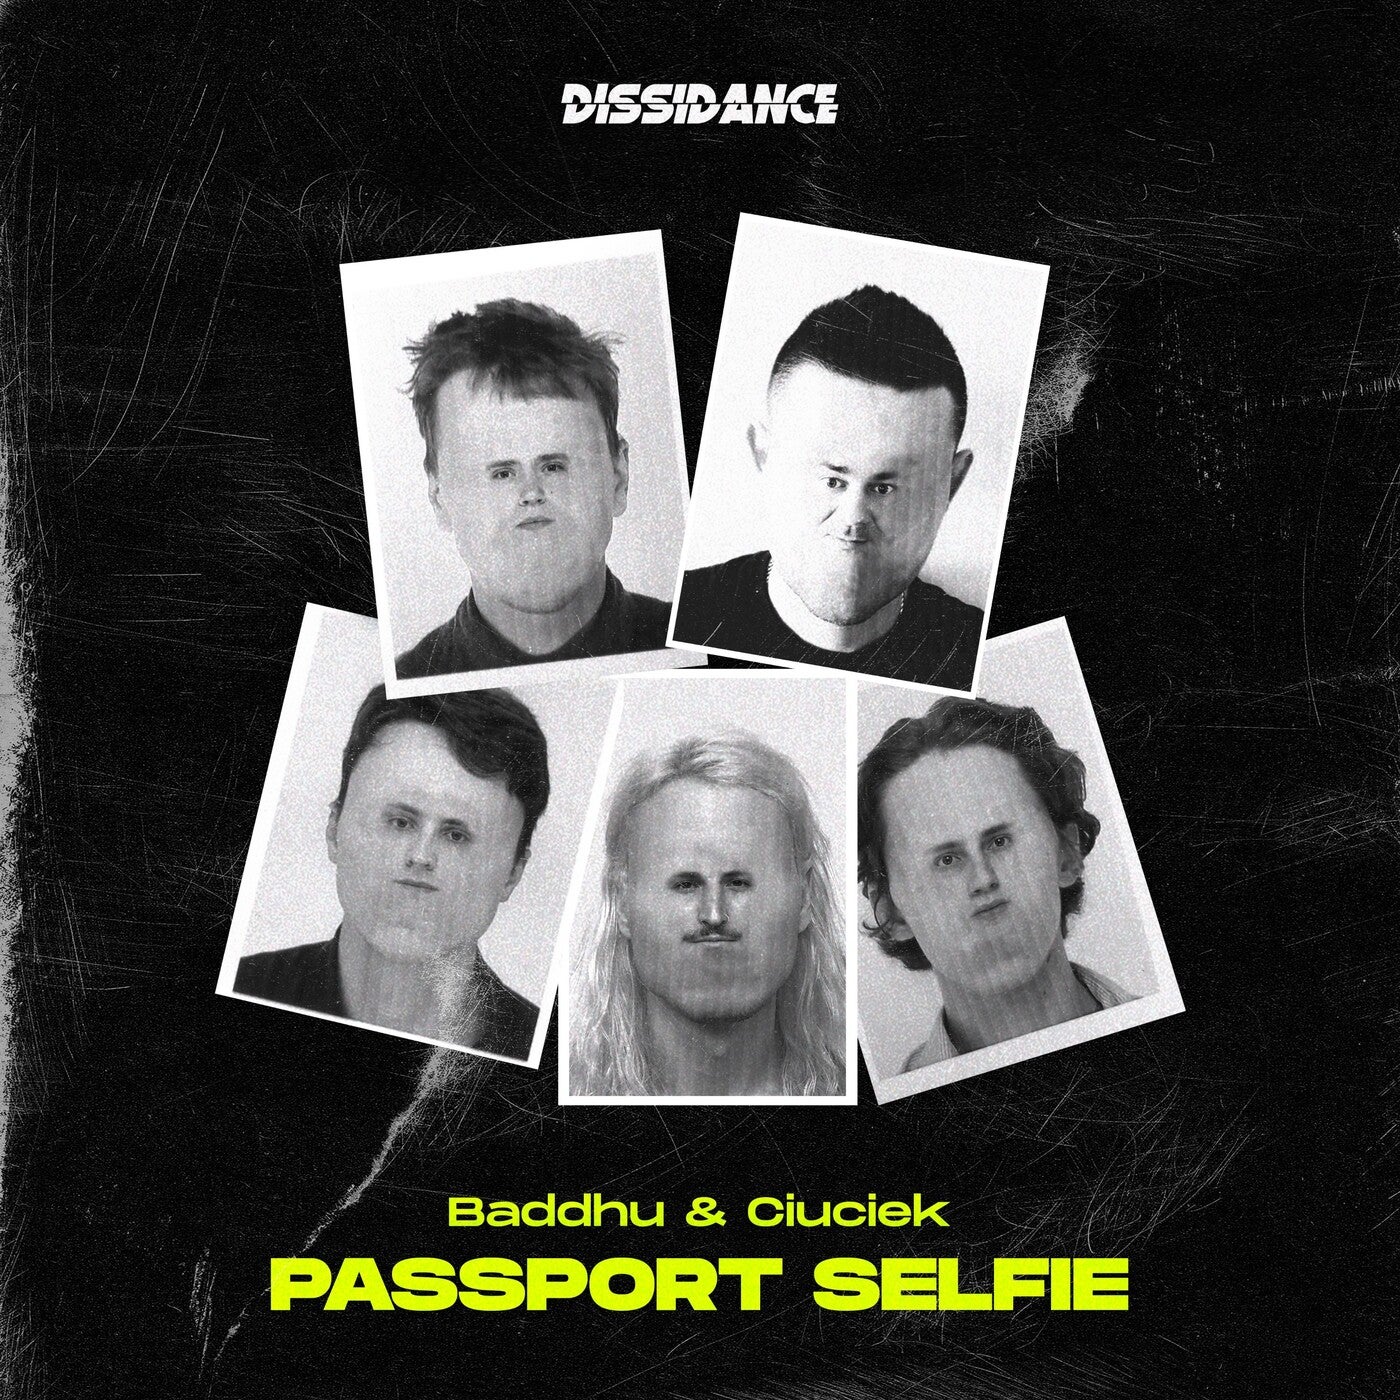 Passport Selfie